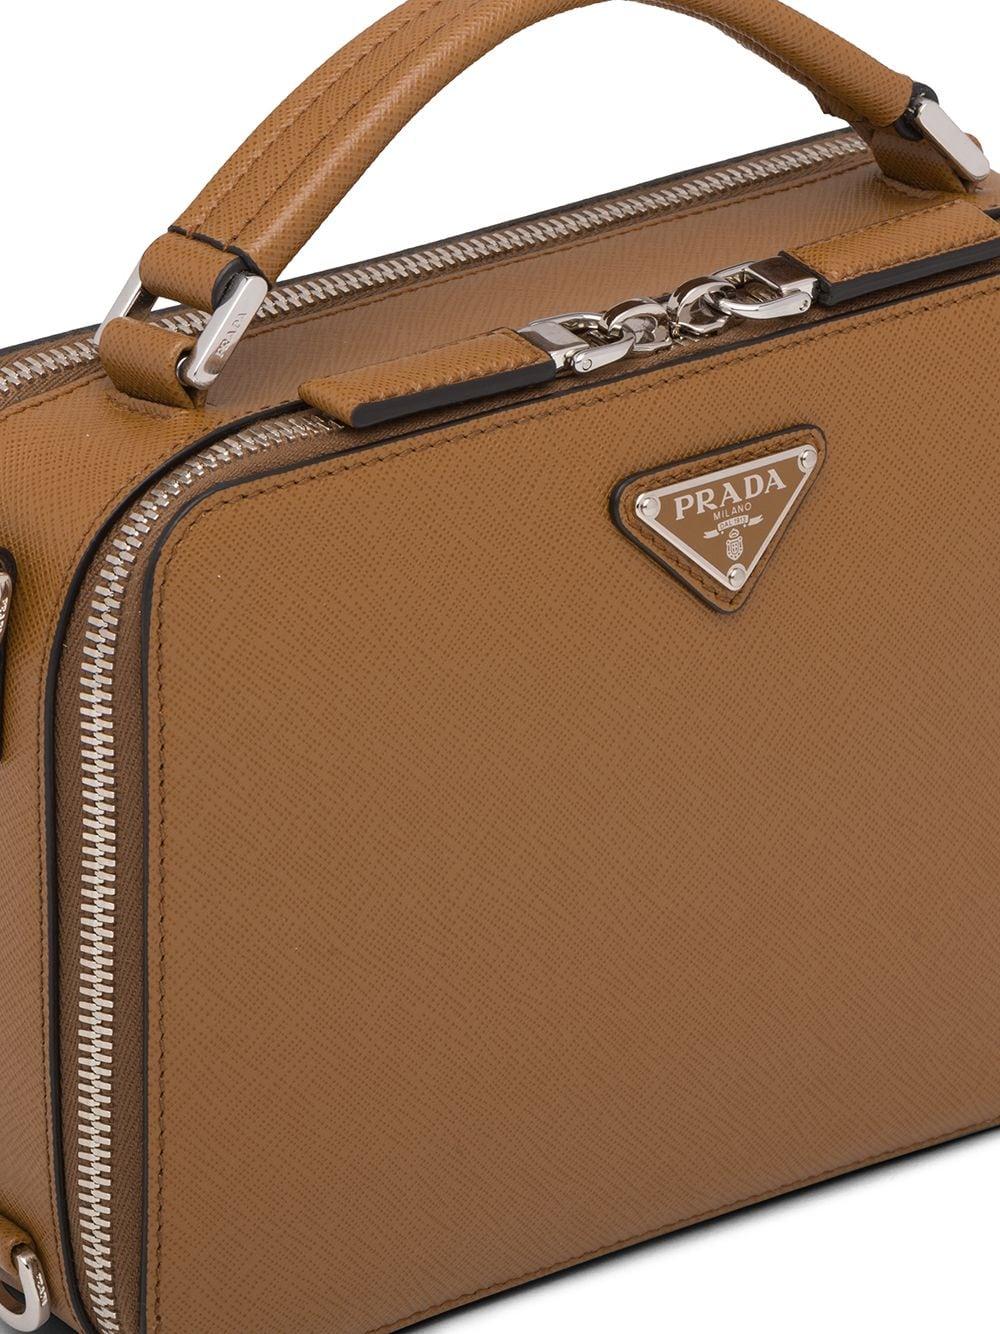 Prada Saffiano Leather Shoulder Bag, $1,990, farfetch.com